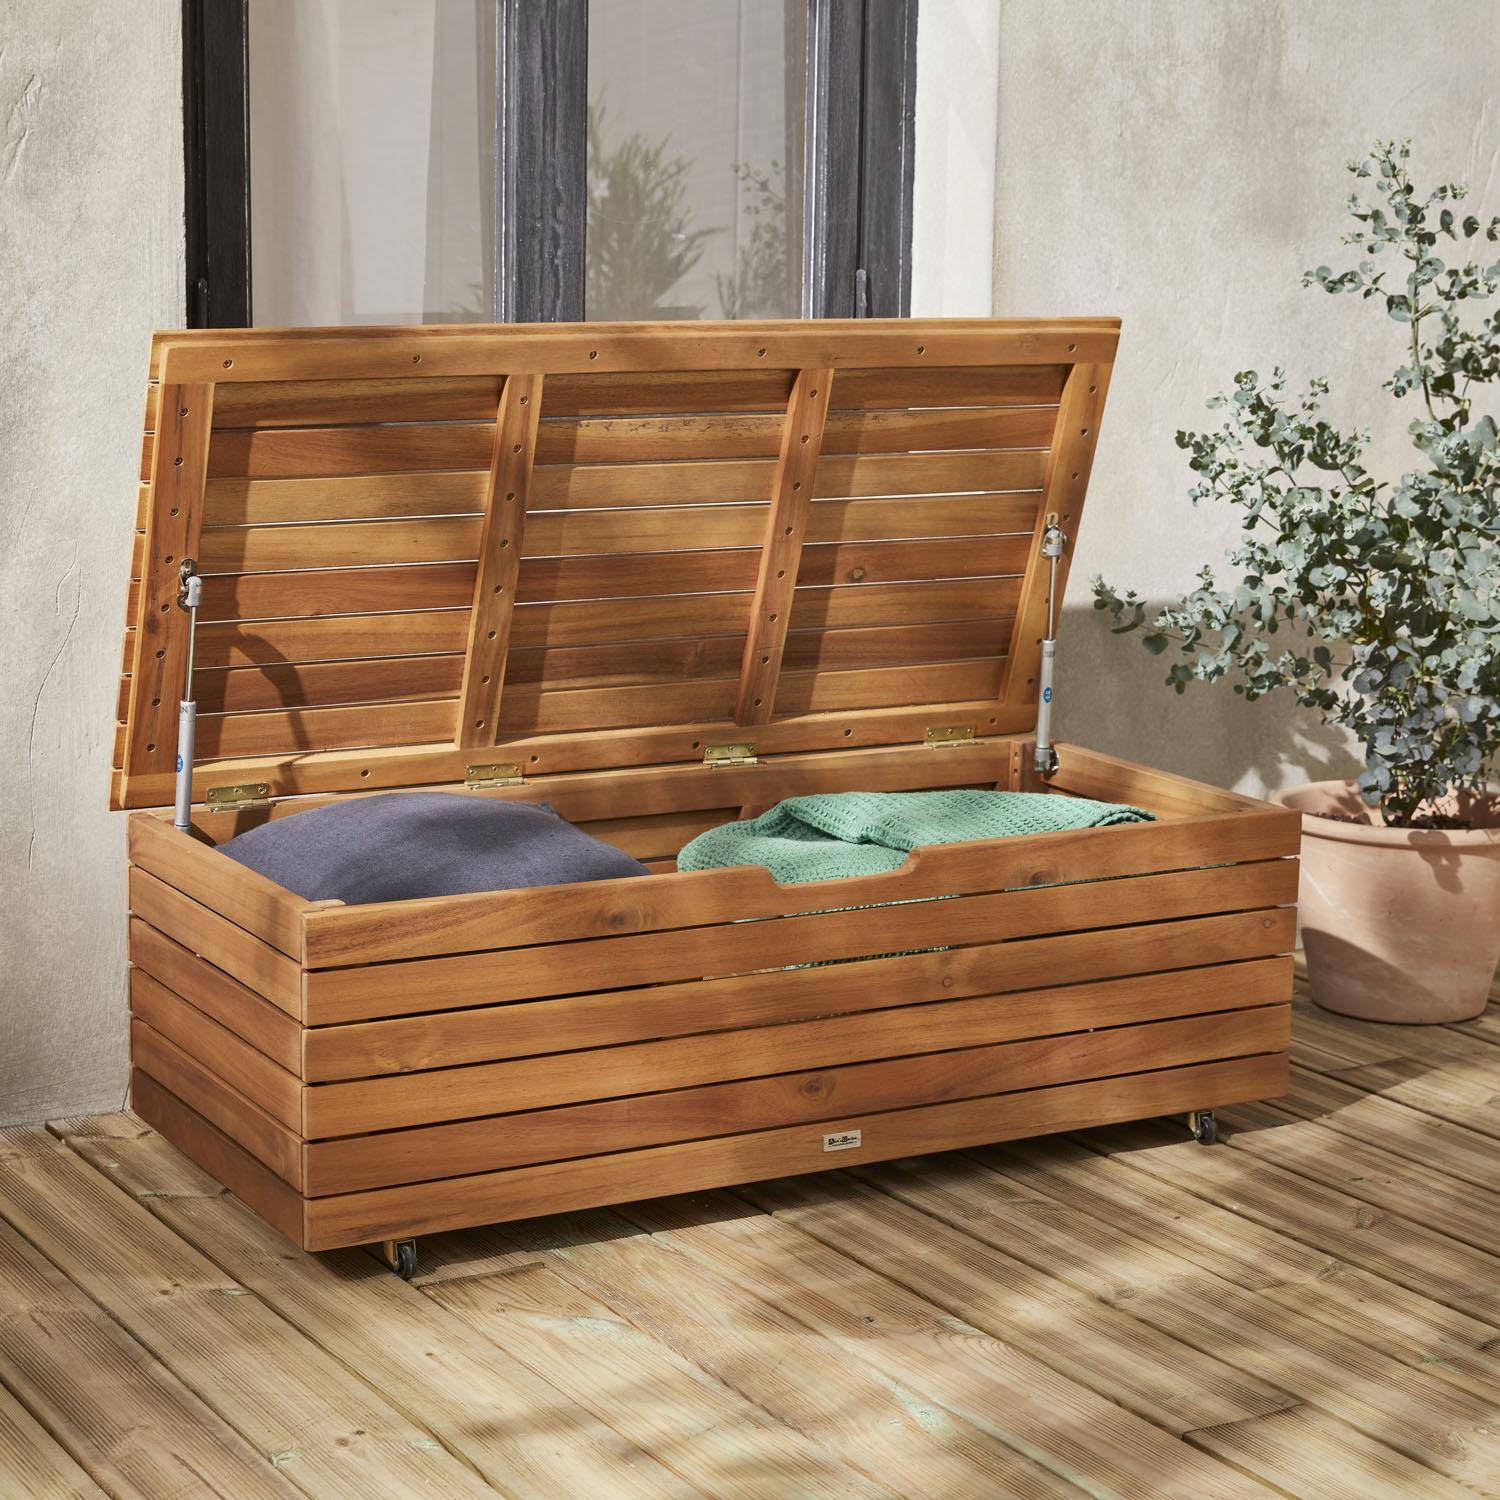 Baule da giardino in legno | Saragosse - 110L | Baule per riporre i cuscini 107x48,5cm con martinetti e rotelle Photo2